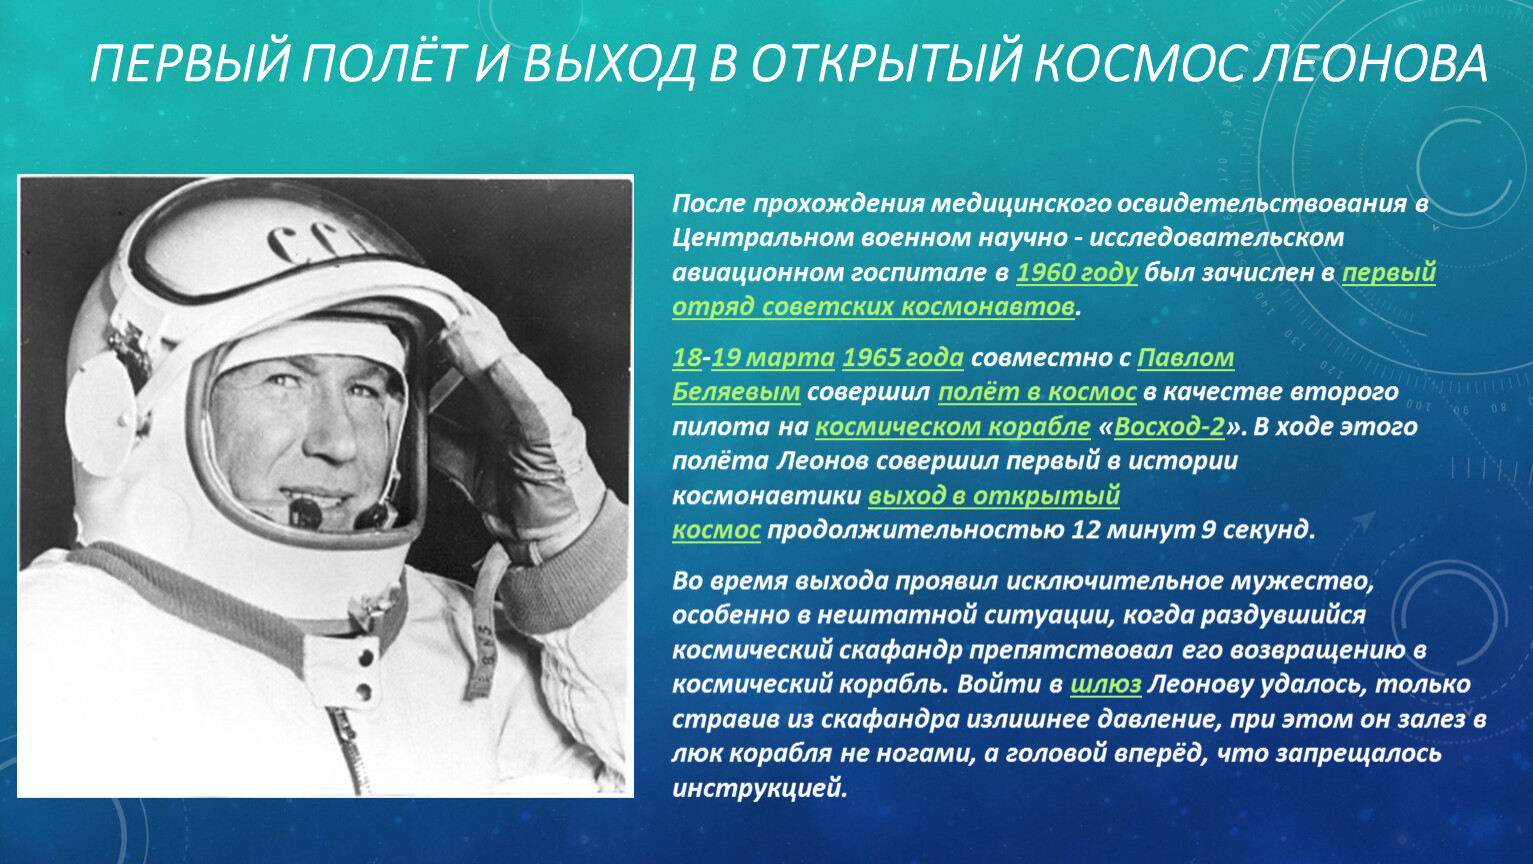 Первый вышел в открытый космос год. Леонов космонавт первый полет.